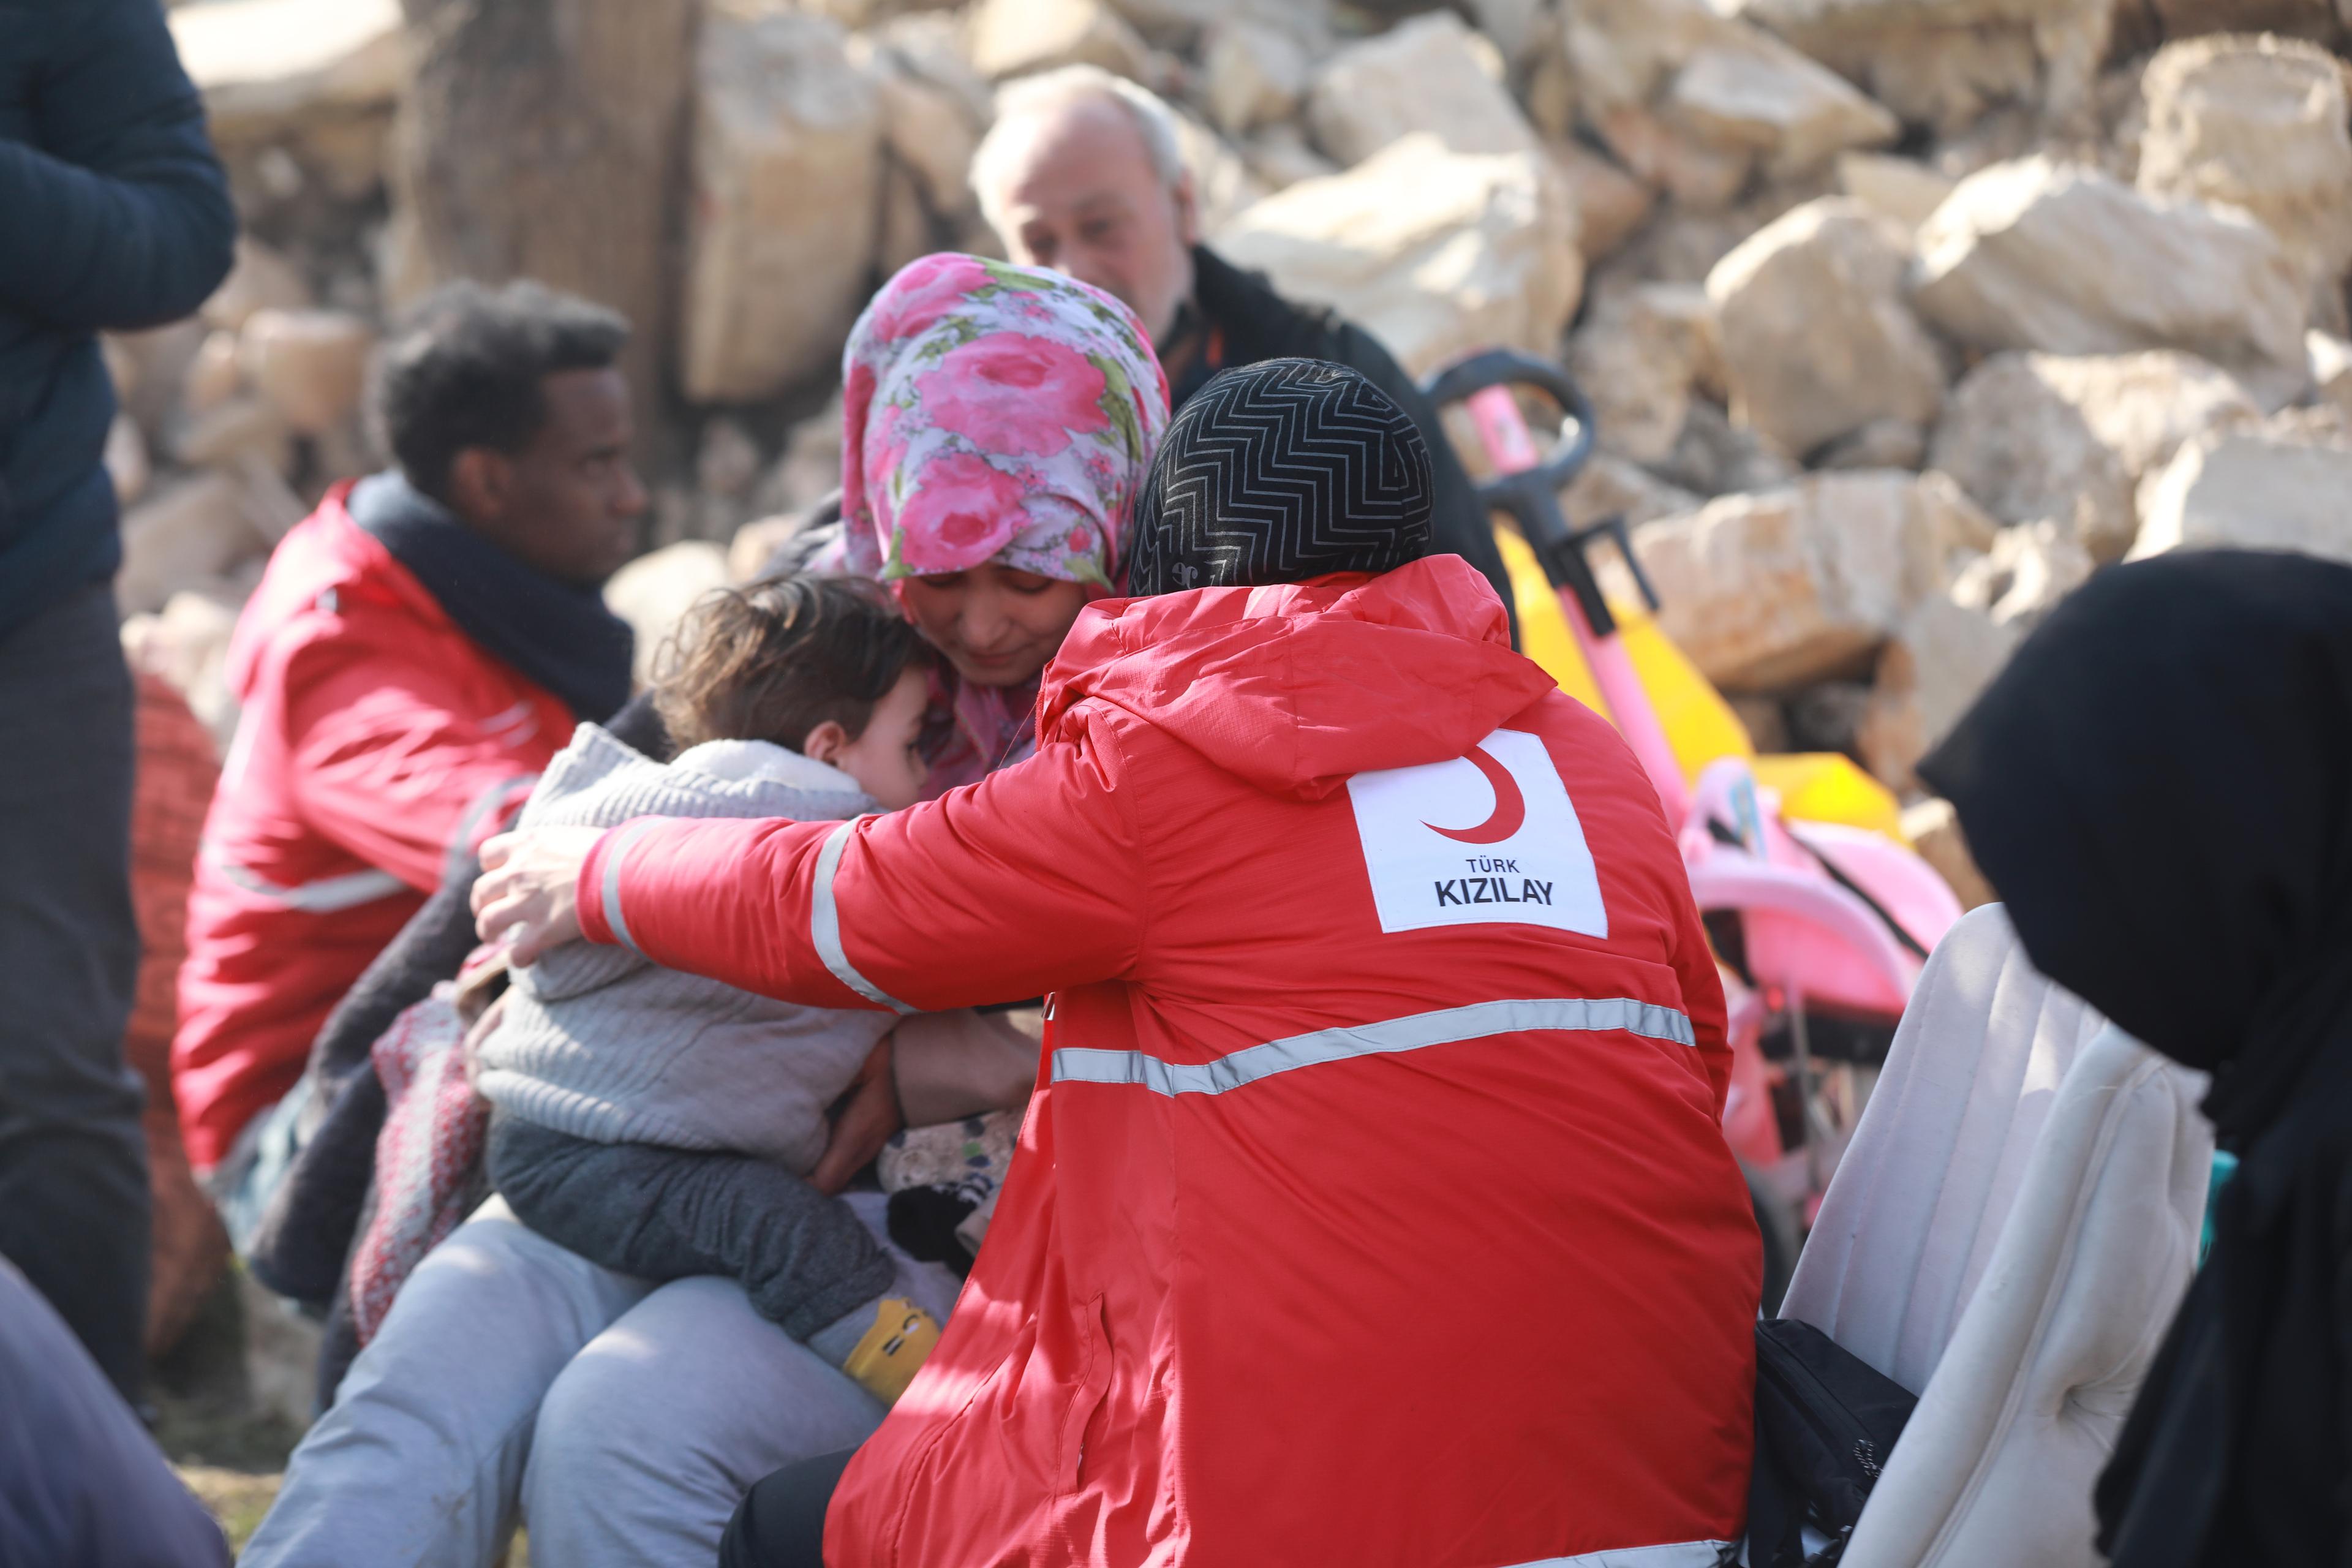  Nach dem verheerenden Erdbeben, das die Türkei und Syrien am 6. Februar 2023 erschütterte, hat der Türkische Rote Halbmond mehr als 4.000 Mitarbeiter und Freiwillige entsandt, um auf die dringenden Bedürfnisse der betroffenen Menschen zu reagieren.